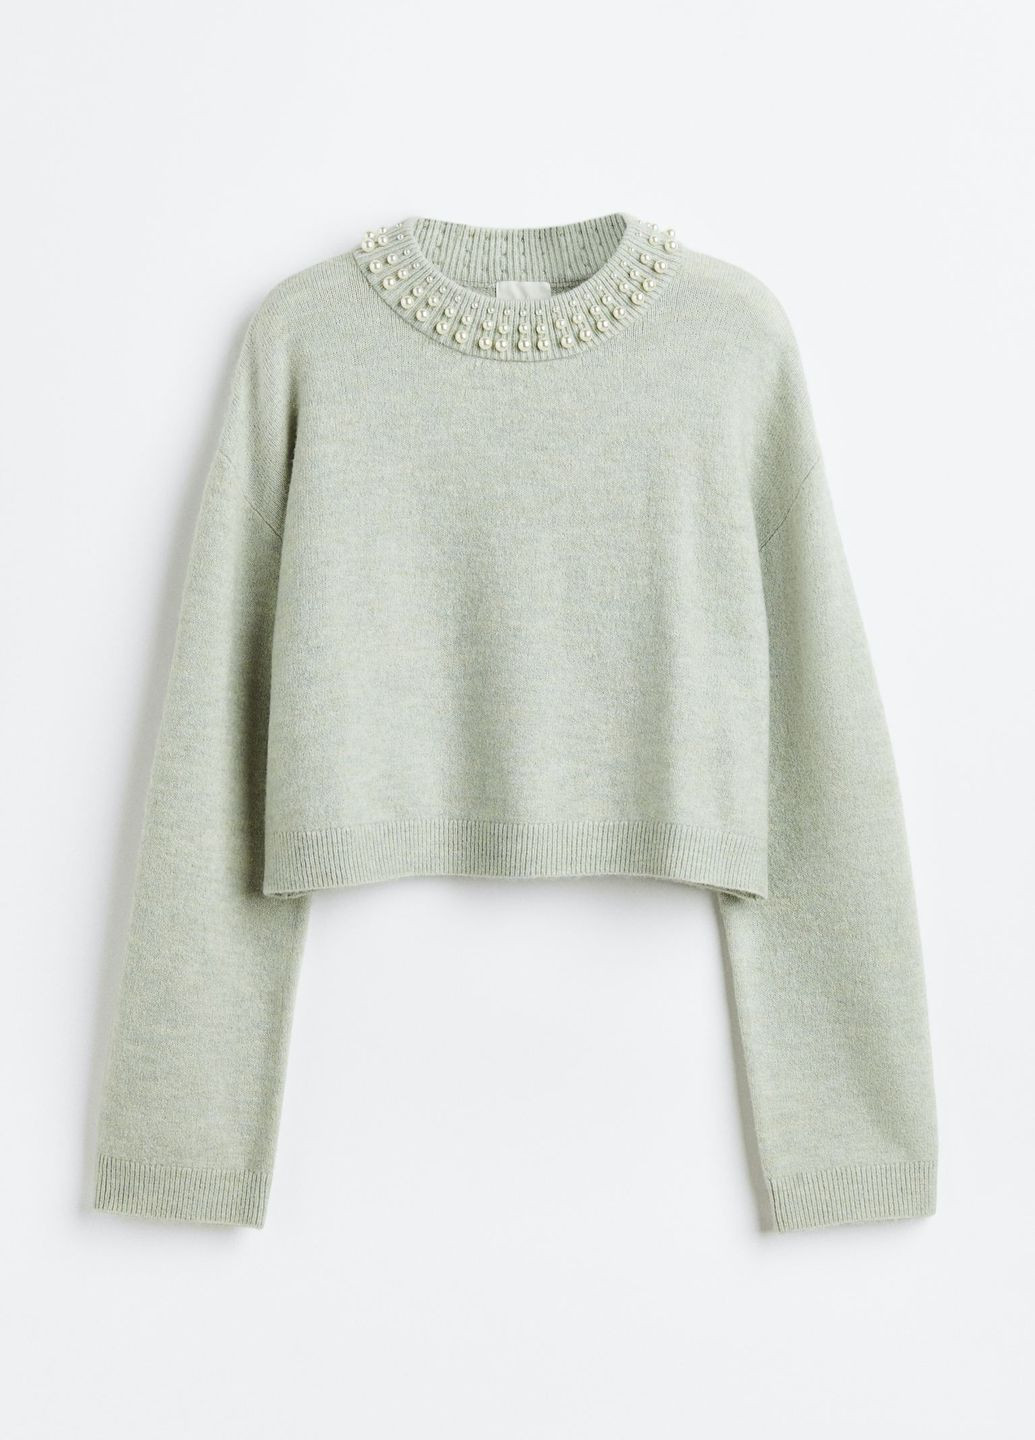 Светло-зеленый демисезонный свитер вышитый бисером H&M